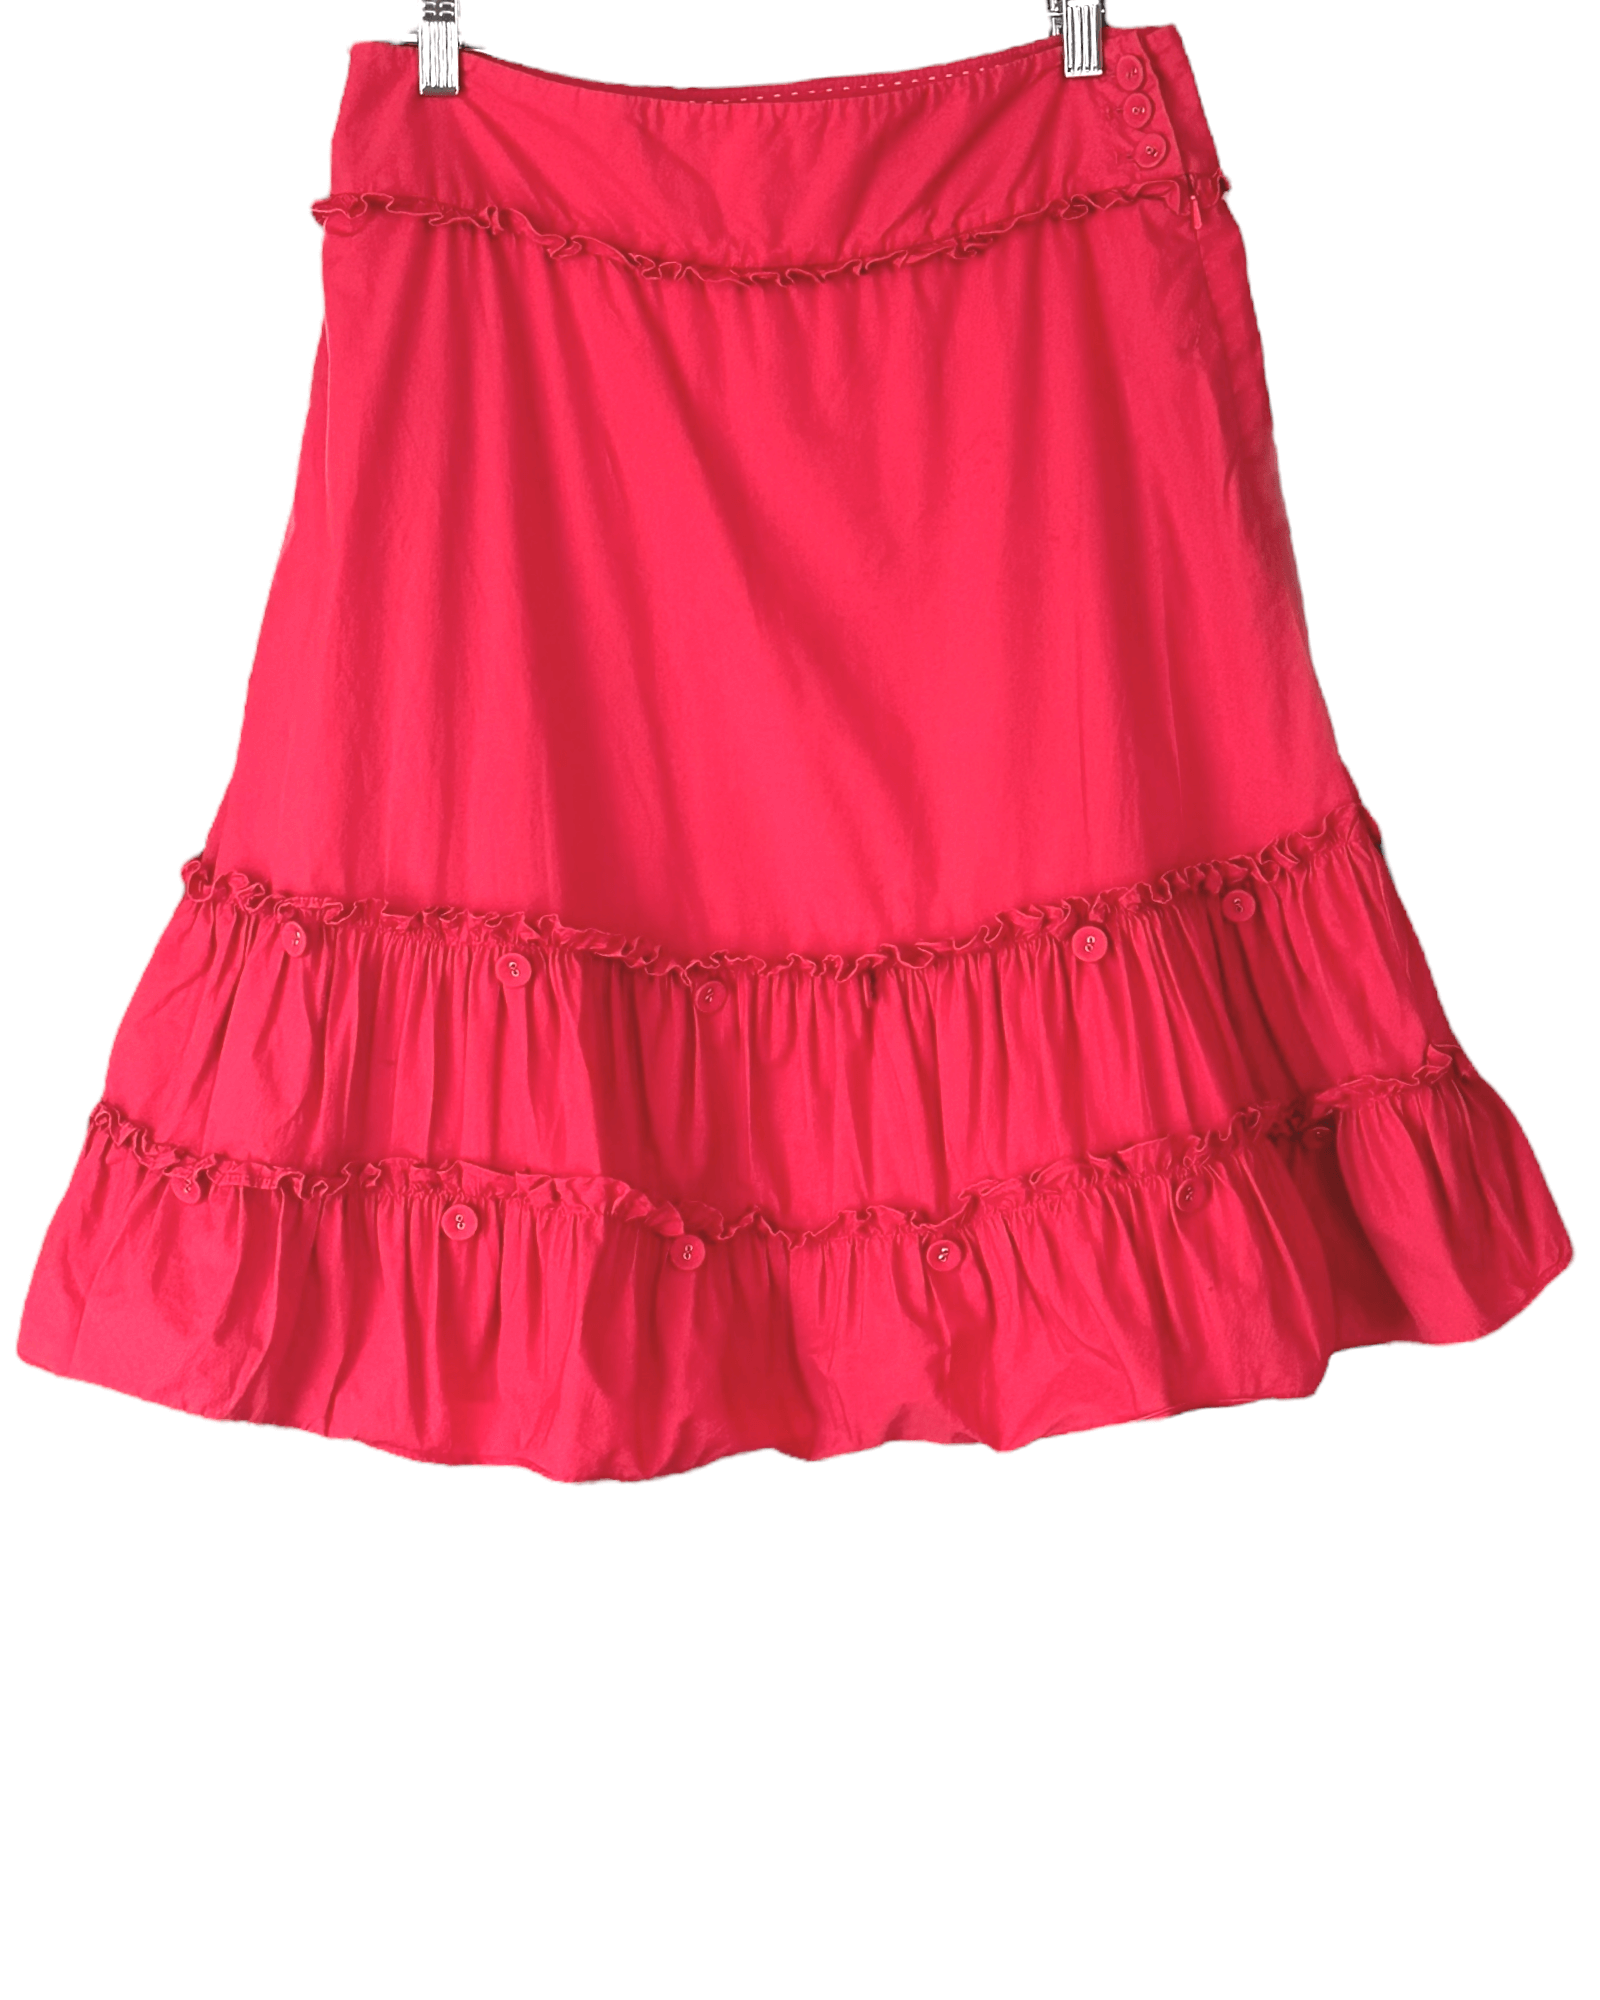 Light Spring ELEVENSES for ANTHROPOLOGIE raspberry red ruffle button skirt